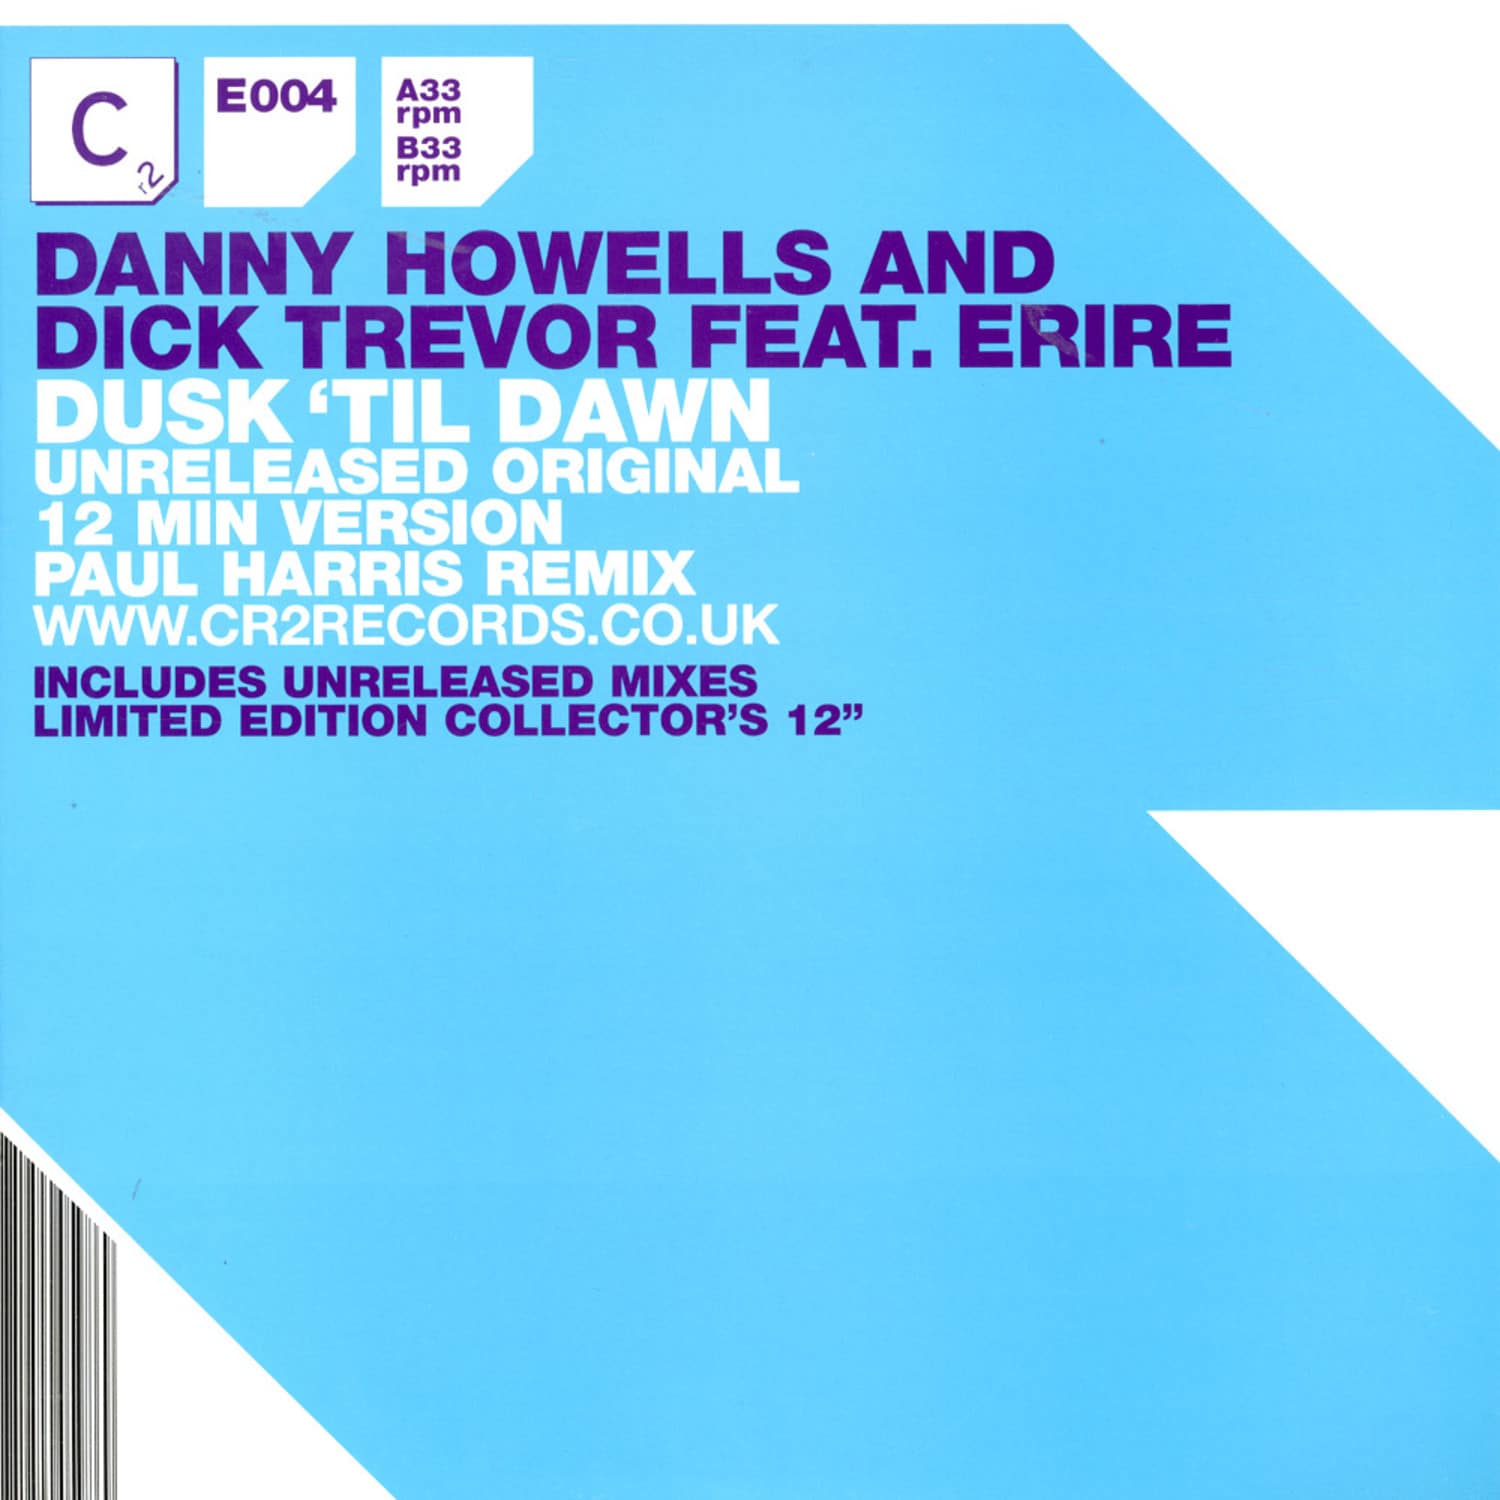 Danny Howells - DUSK TILL DAWN REMIX